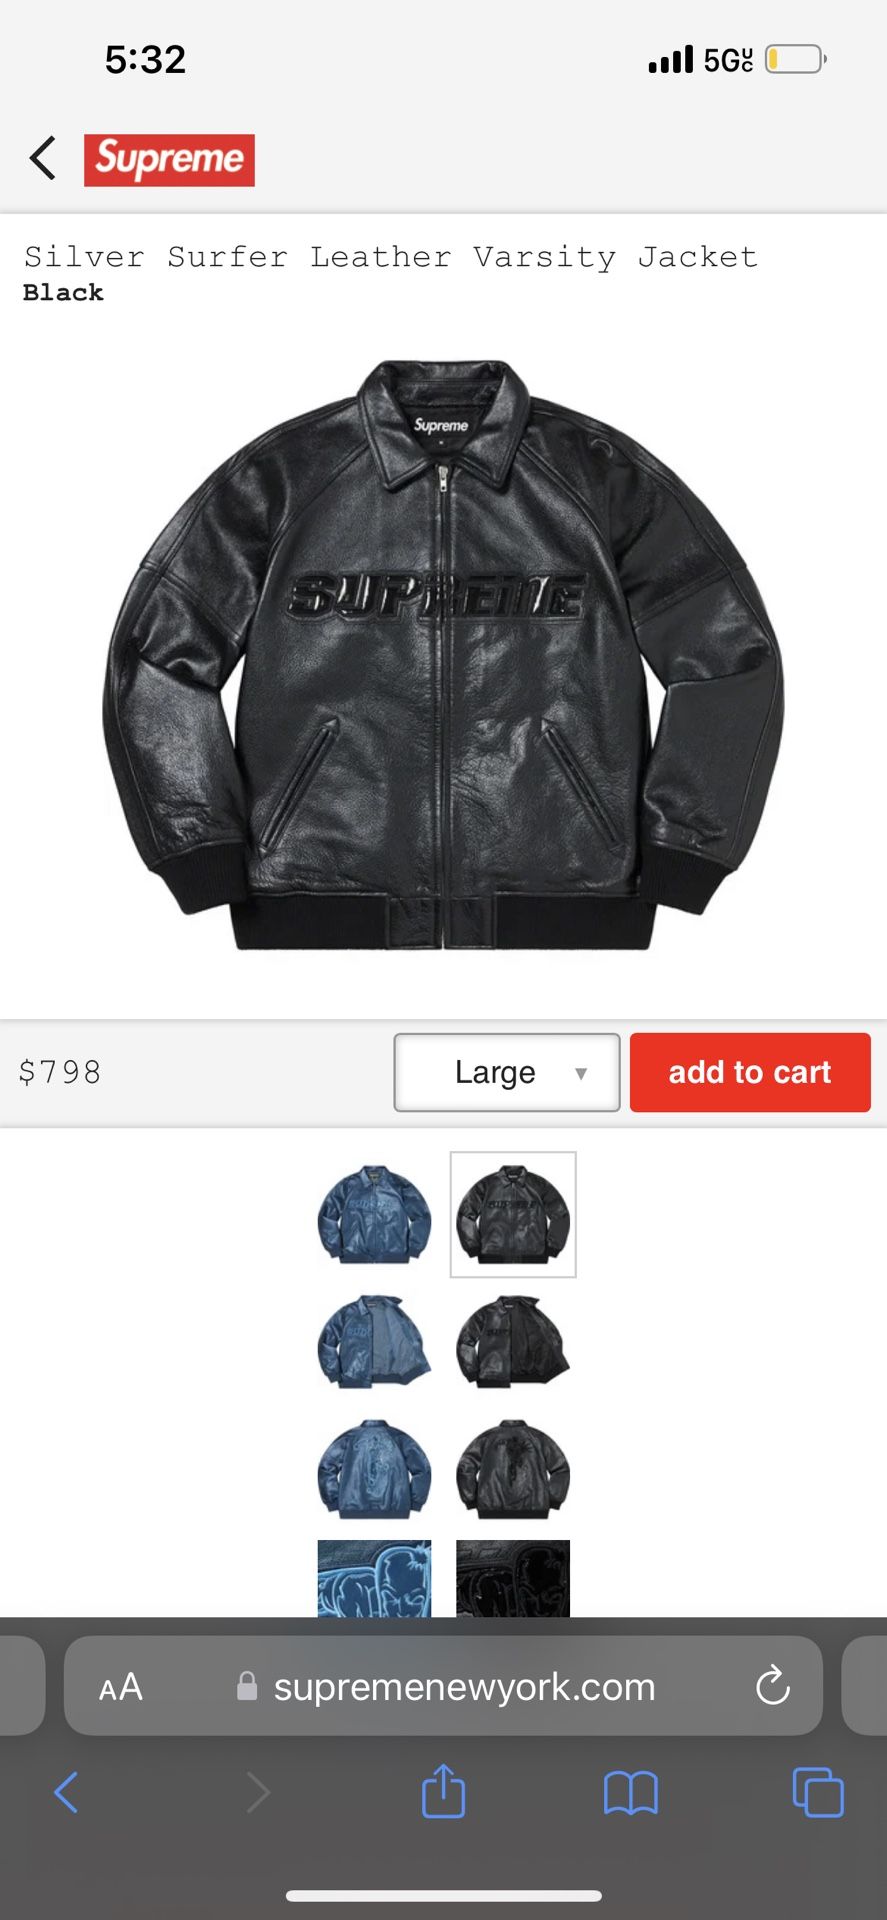 supreme leather silver surfer jacket black size large 